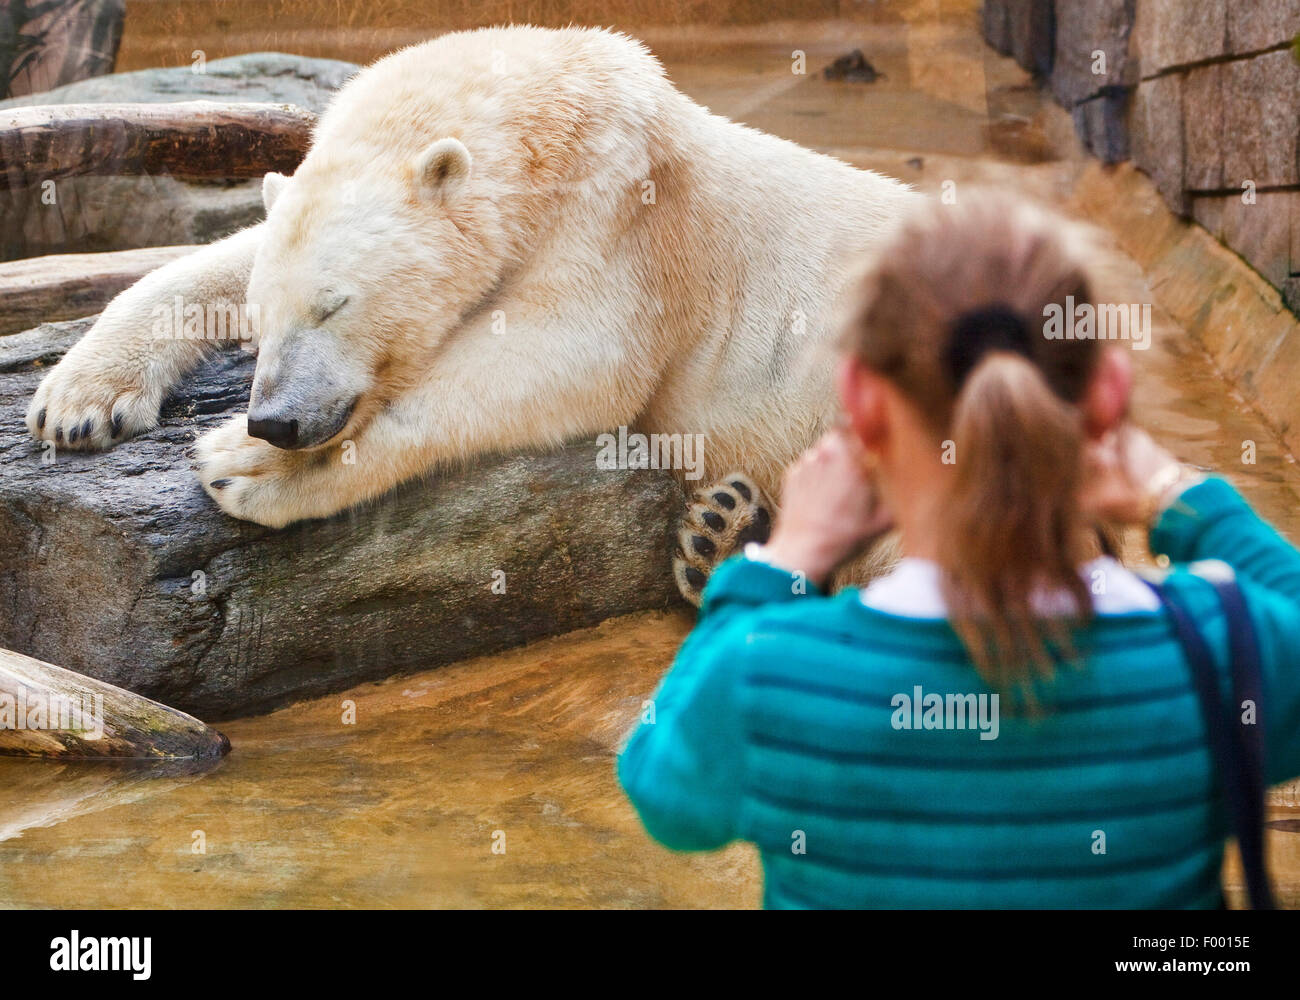 Orso polare (Ursus maritimus), ragazza prende una foto di un sonno orso polare presso il giardino zoologico di Wuppertal, Germania Foto Stock